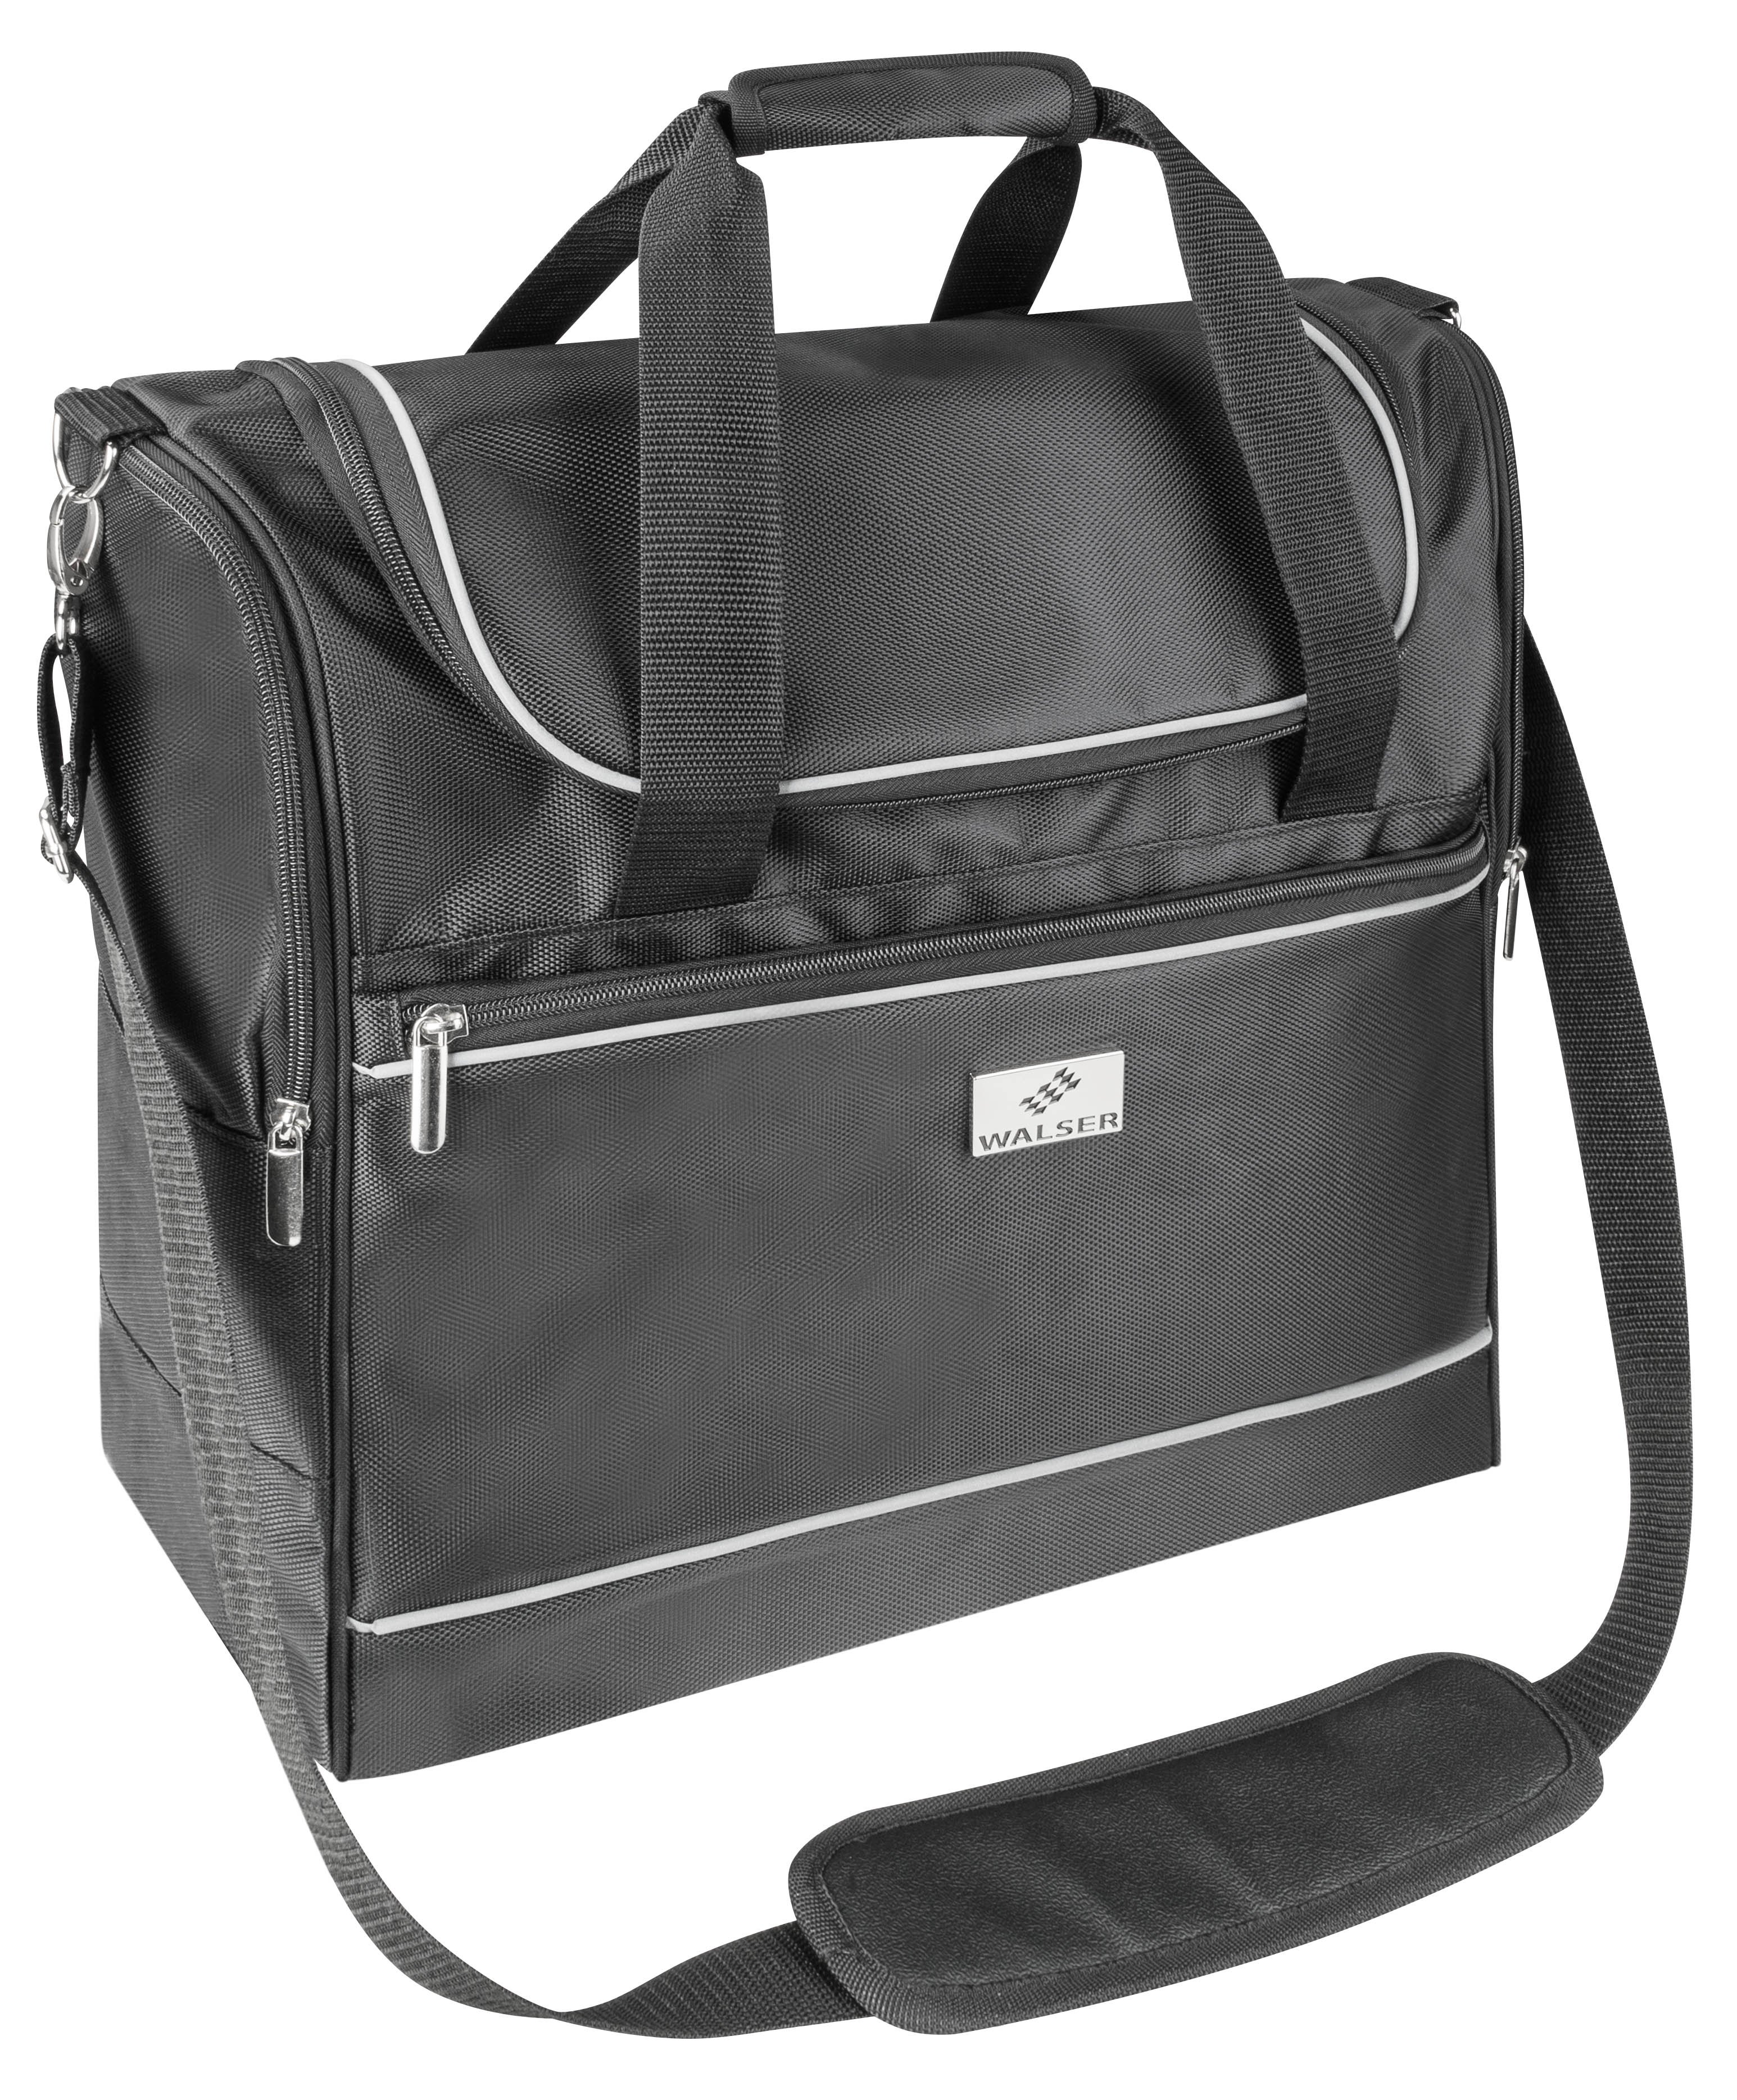 Carbags travel bag 35x20x40cm black